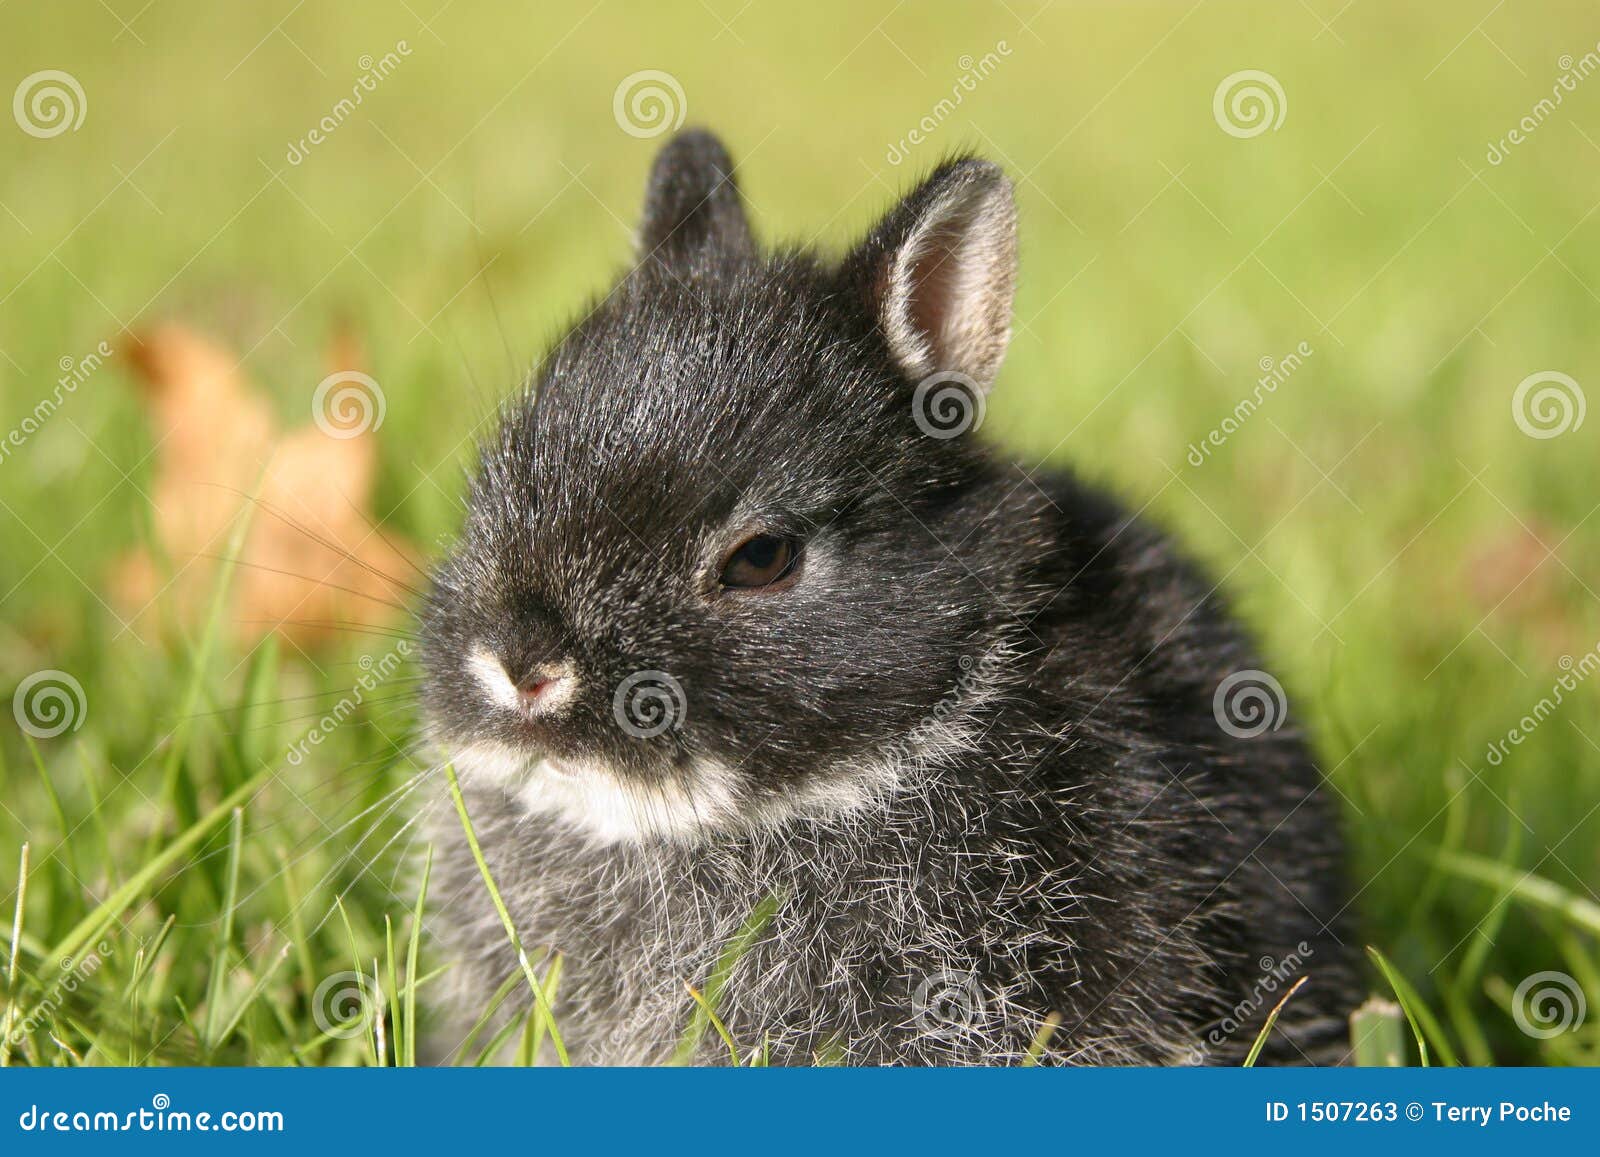 Netherland Dwarf Rabbit I Stock Image Image Of Black 1507263